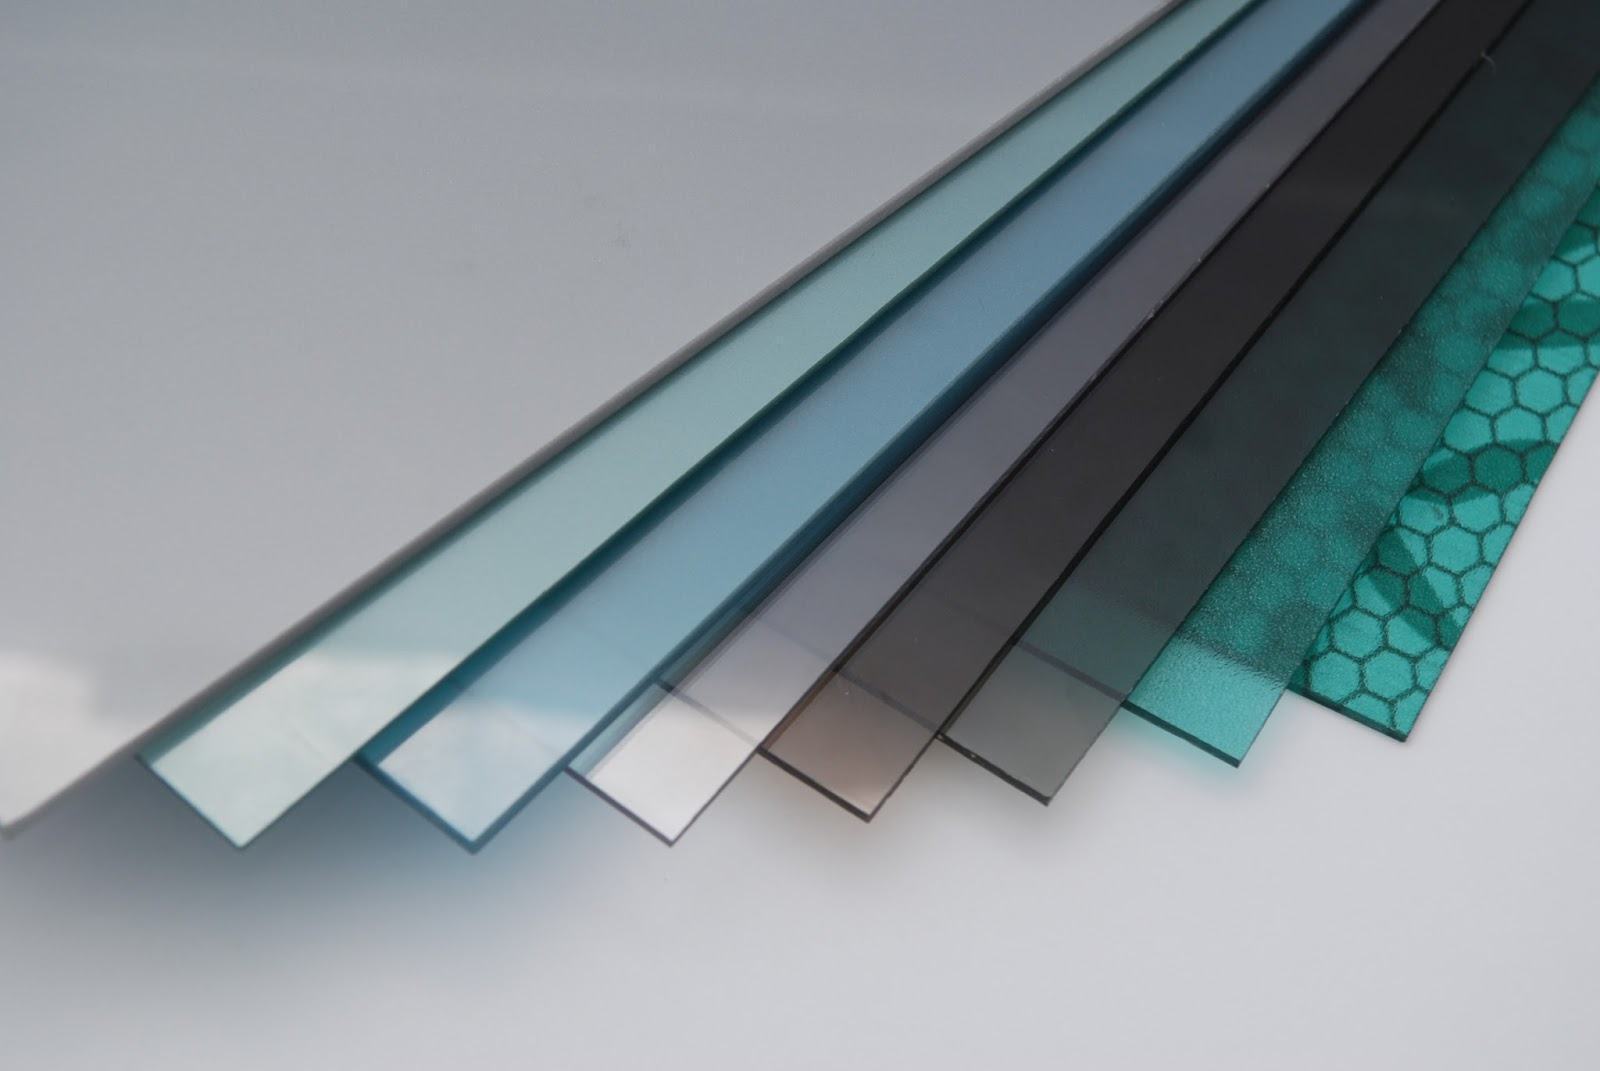 Tấm nhựa polycarbonate với nhiều mẫu mã và màu sắc